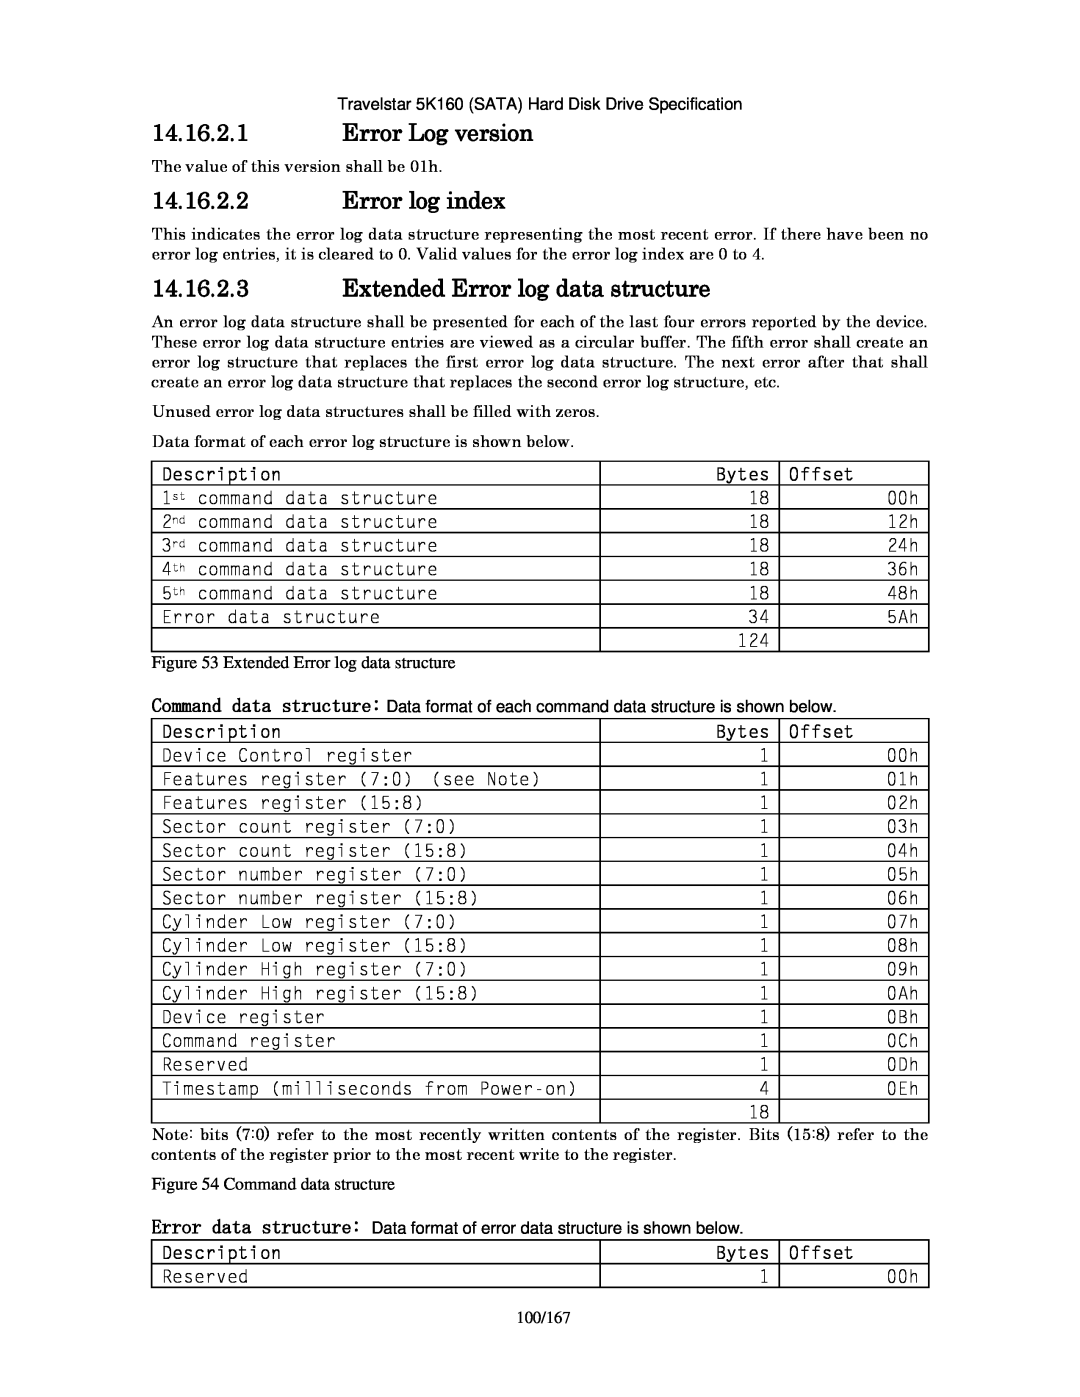 Hitachi HTS541640J9SA00 Error Log version, Error log index, Extended Error log data structure, Description, Bytes, Offset 